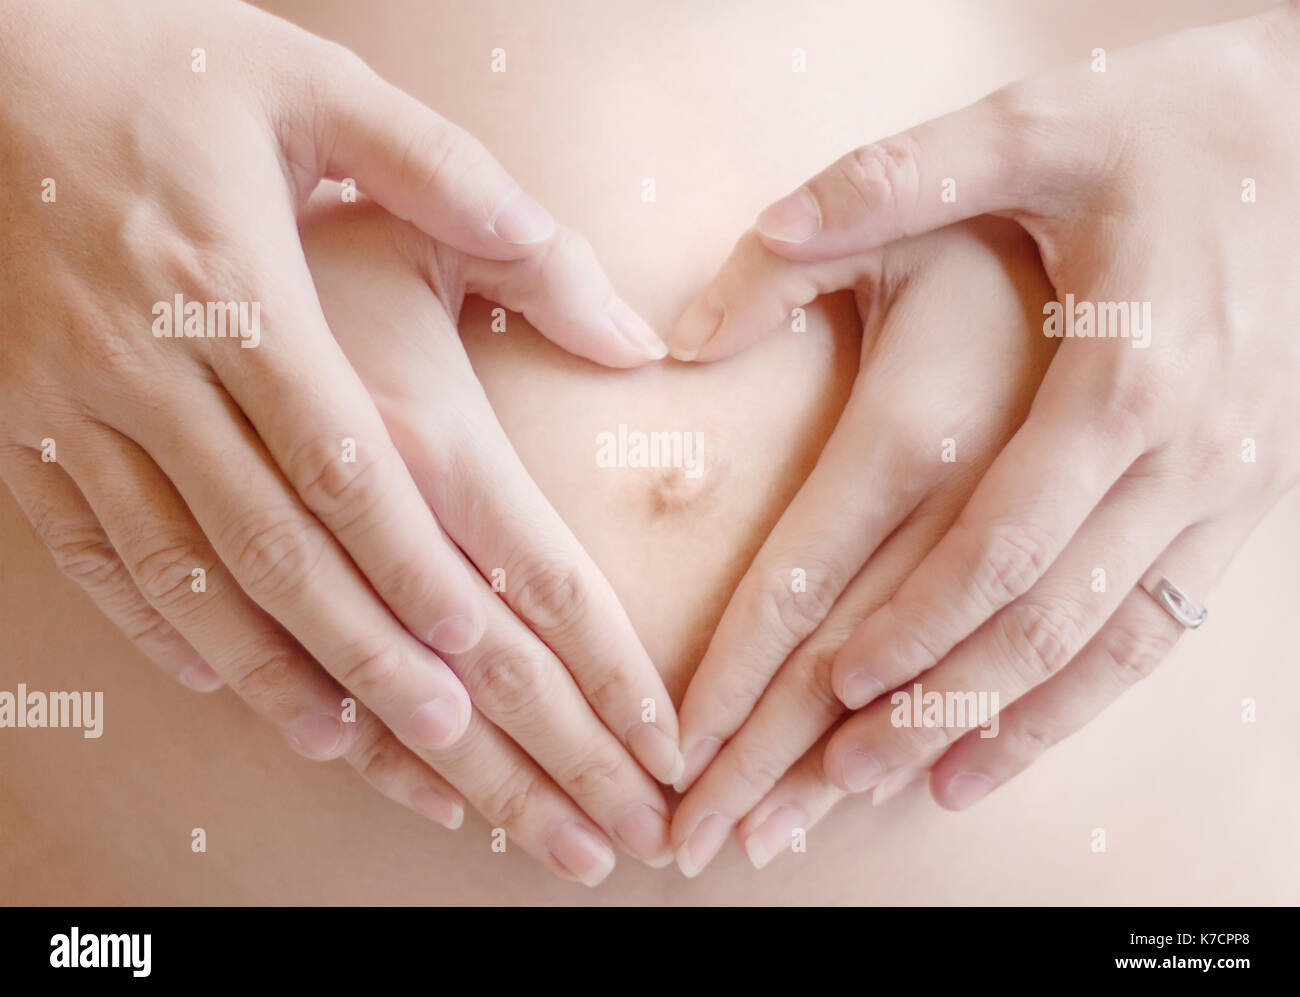 Mama Y Papa Con Forma De Corazon Muestran Manos Amor En La Embarazada Bebe Fotografia De Stock Alamy